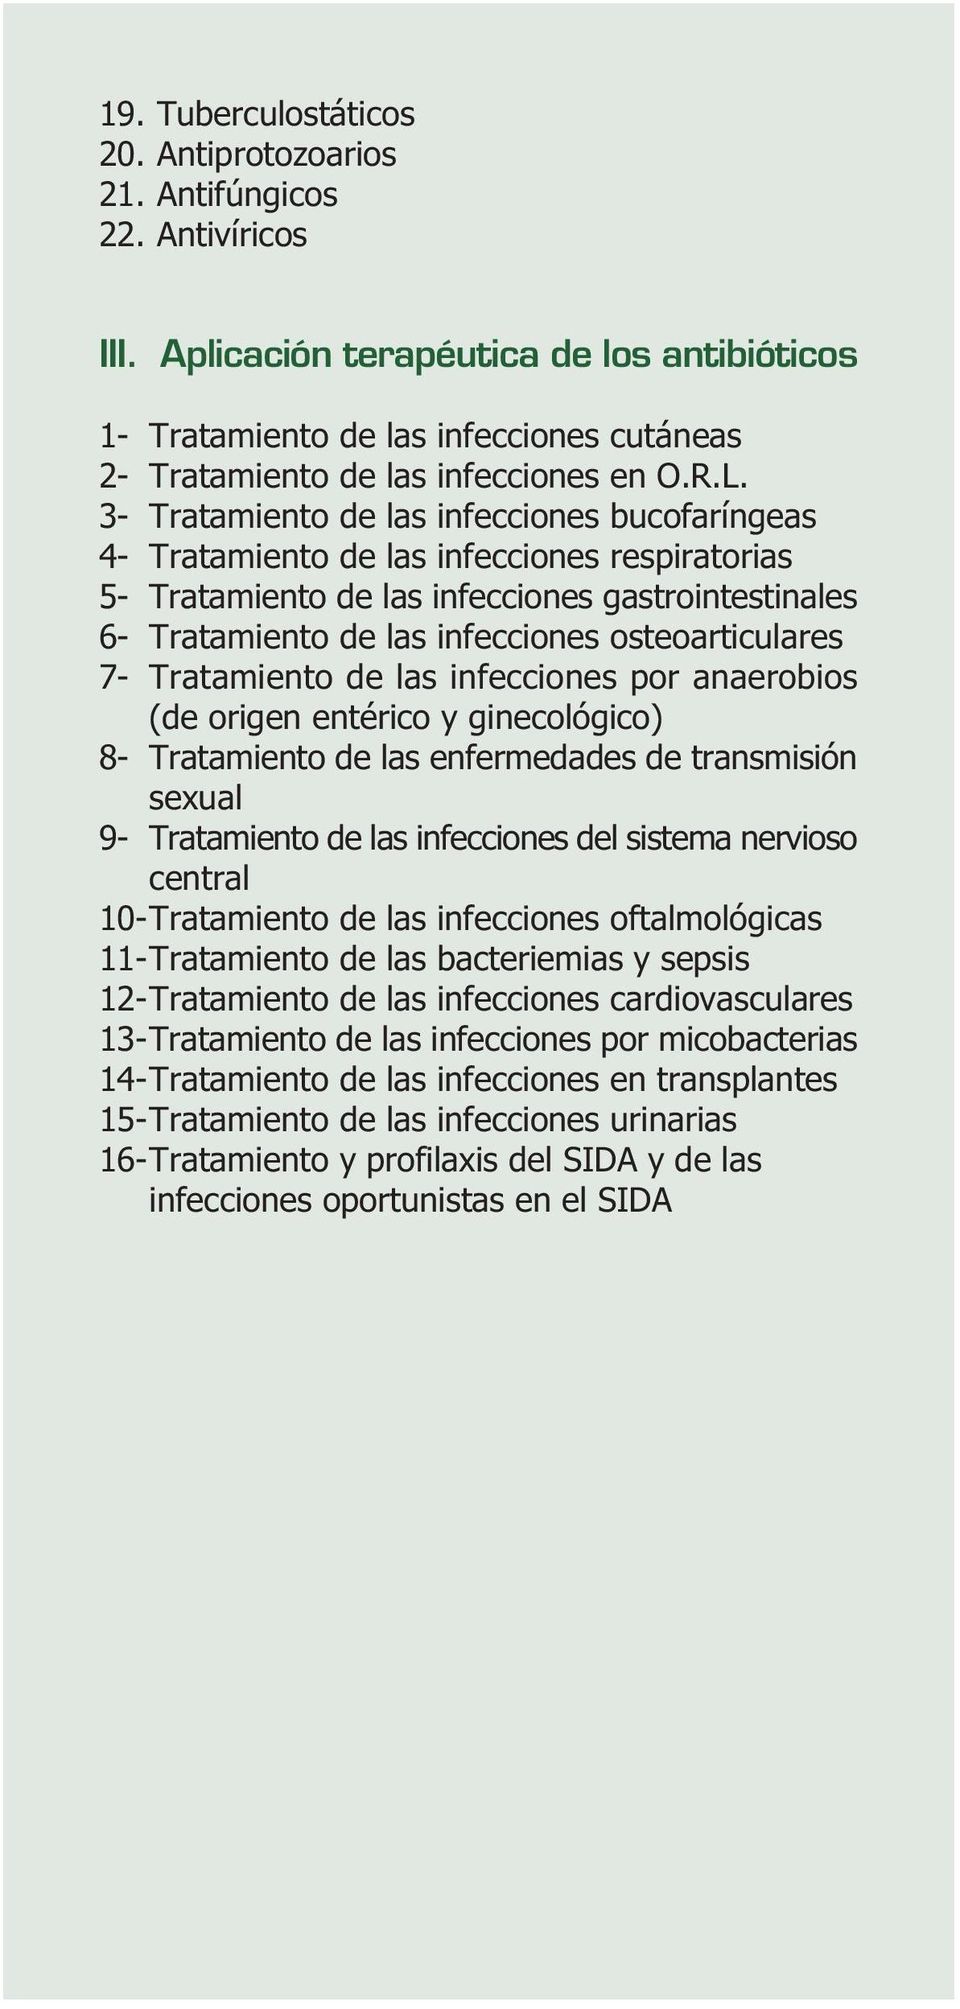 3- Tratamiento de las infecciones bucofaríngeas 4- Tratamiento de las infecciones respiratorias 5- Tratamiento de las infecciones gastrointestinales 6- Tratamiento de las infecciones osteoarticulares